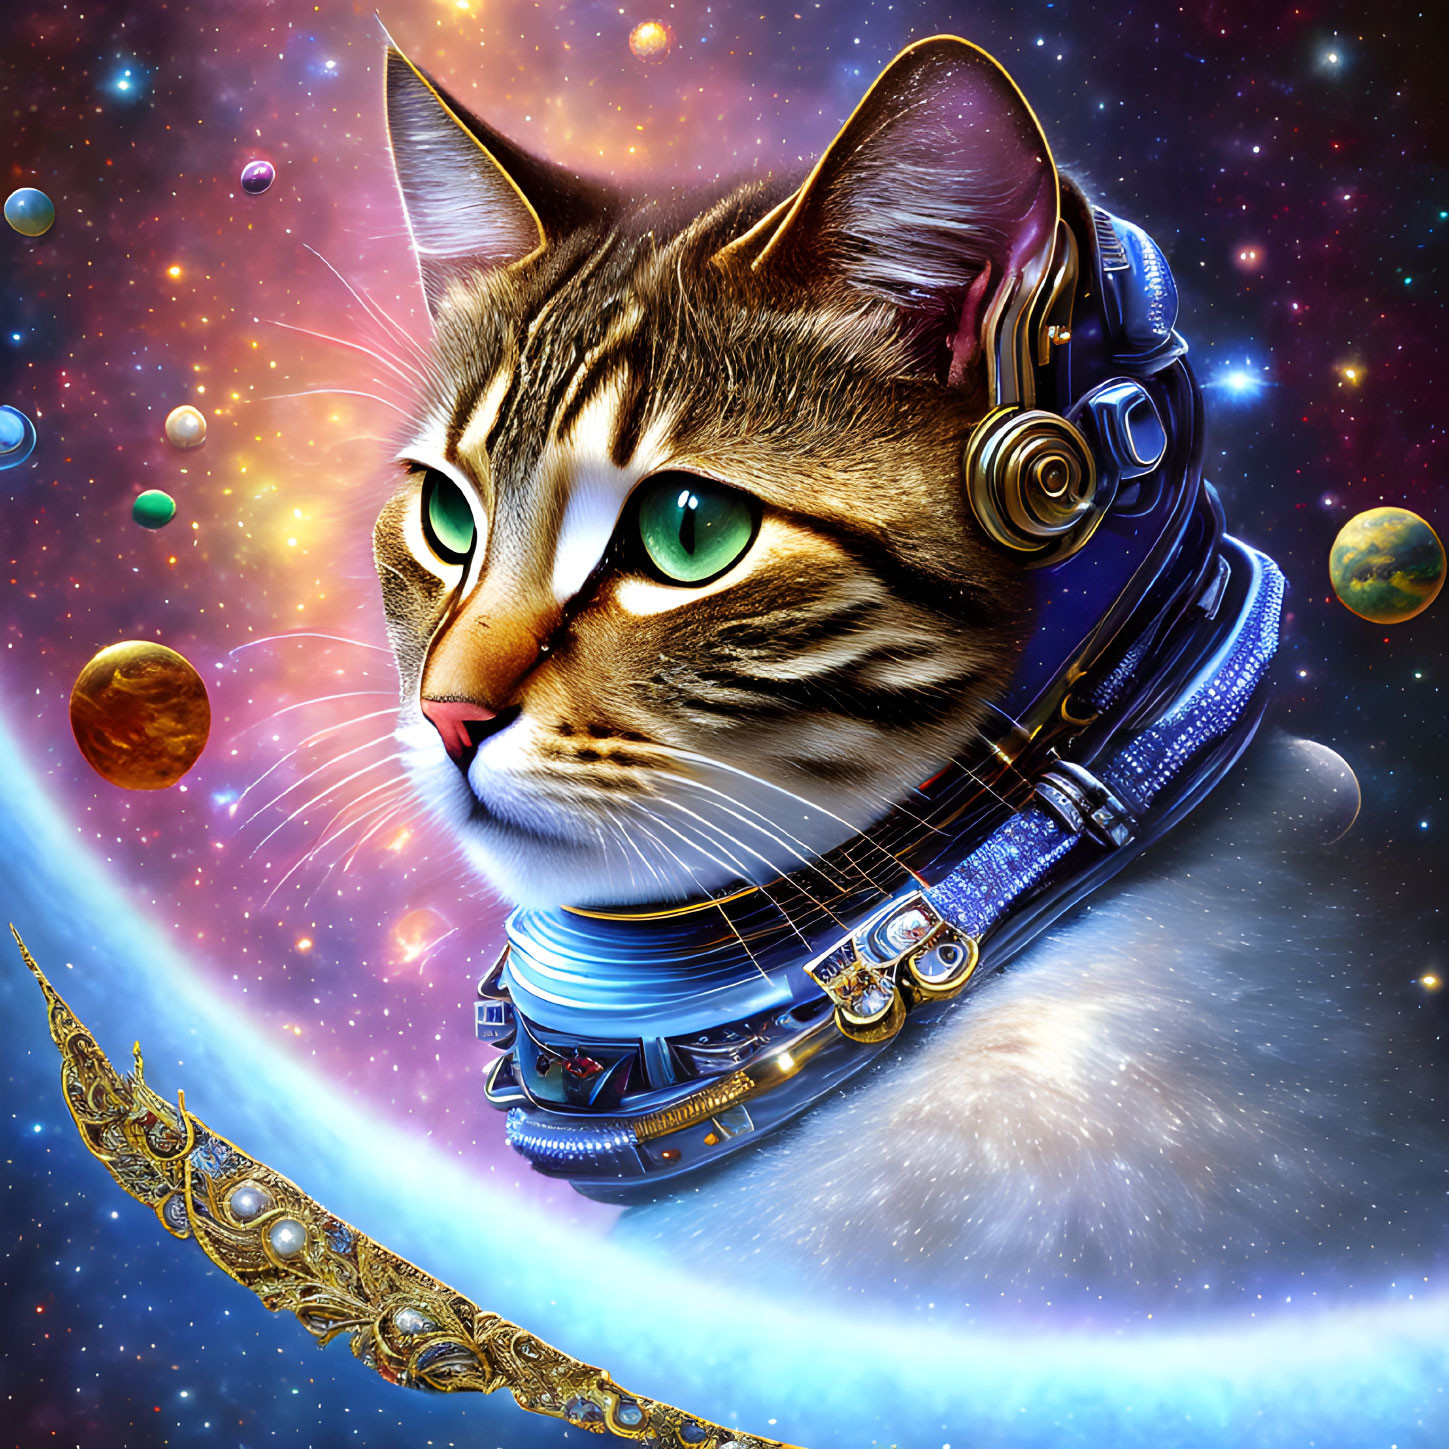  Astronaut cat 